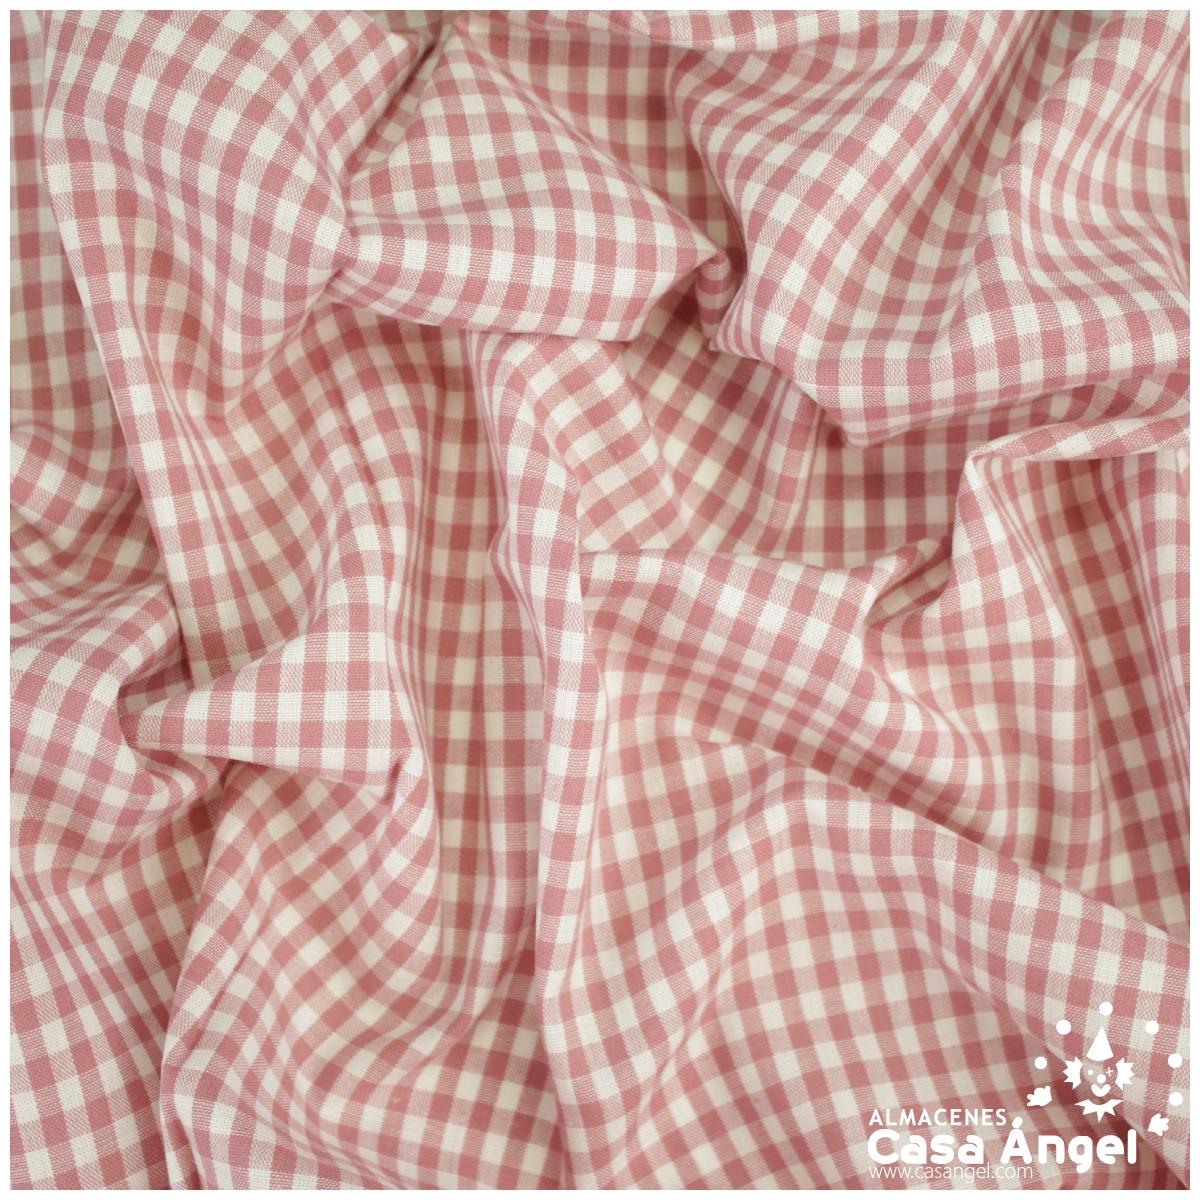 Tela algodón - Cuadros grandes vichy rosa empolvado (9,50€/metro) - MORENTE  Tejidos y Vestidos